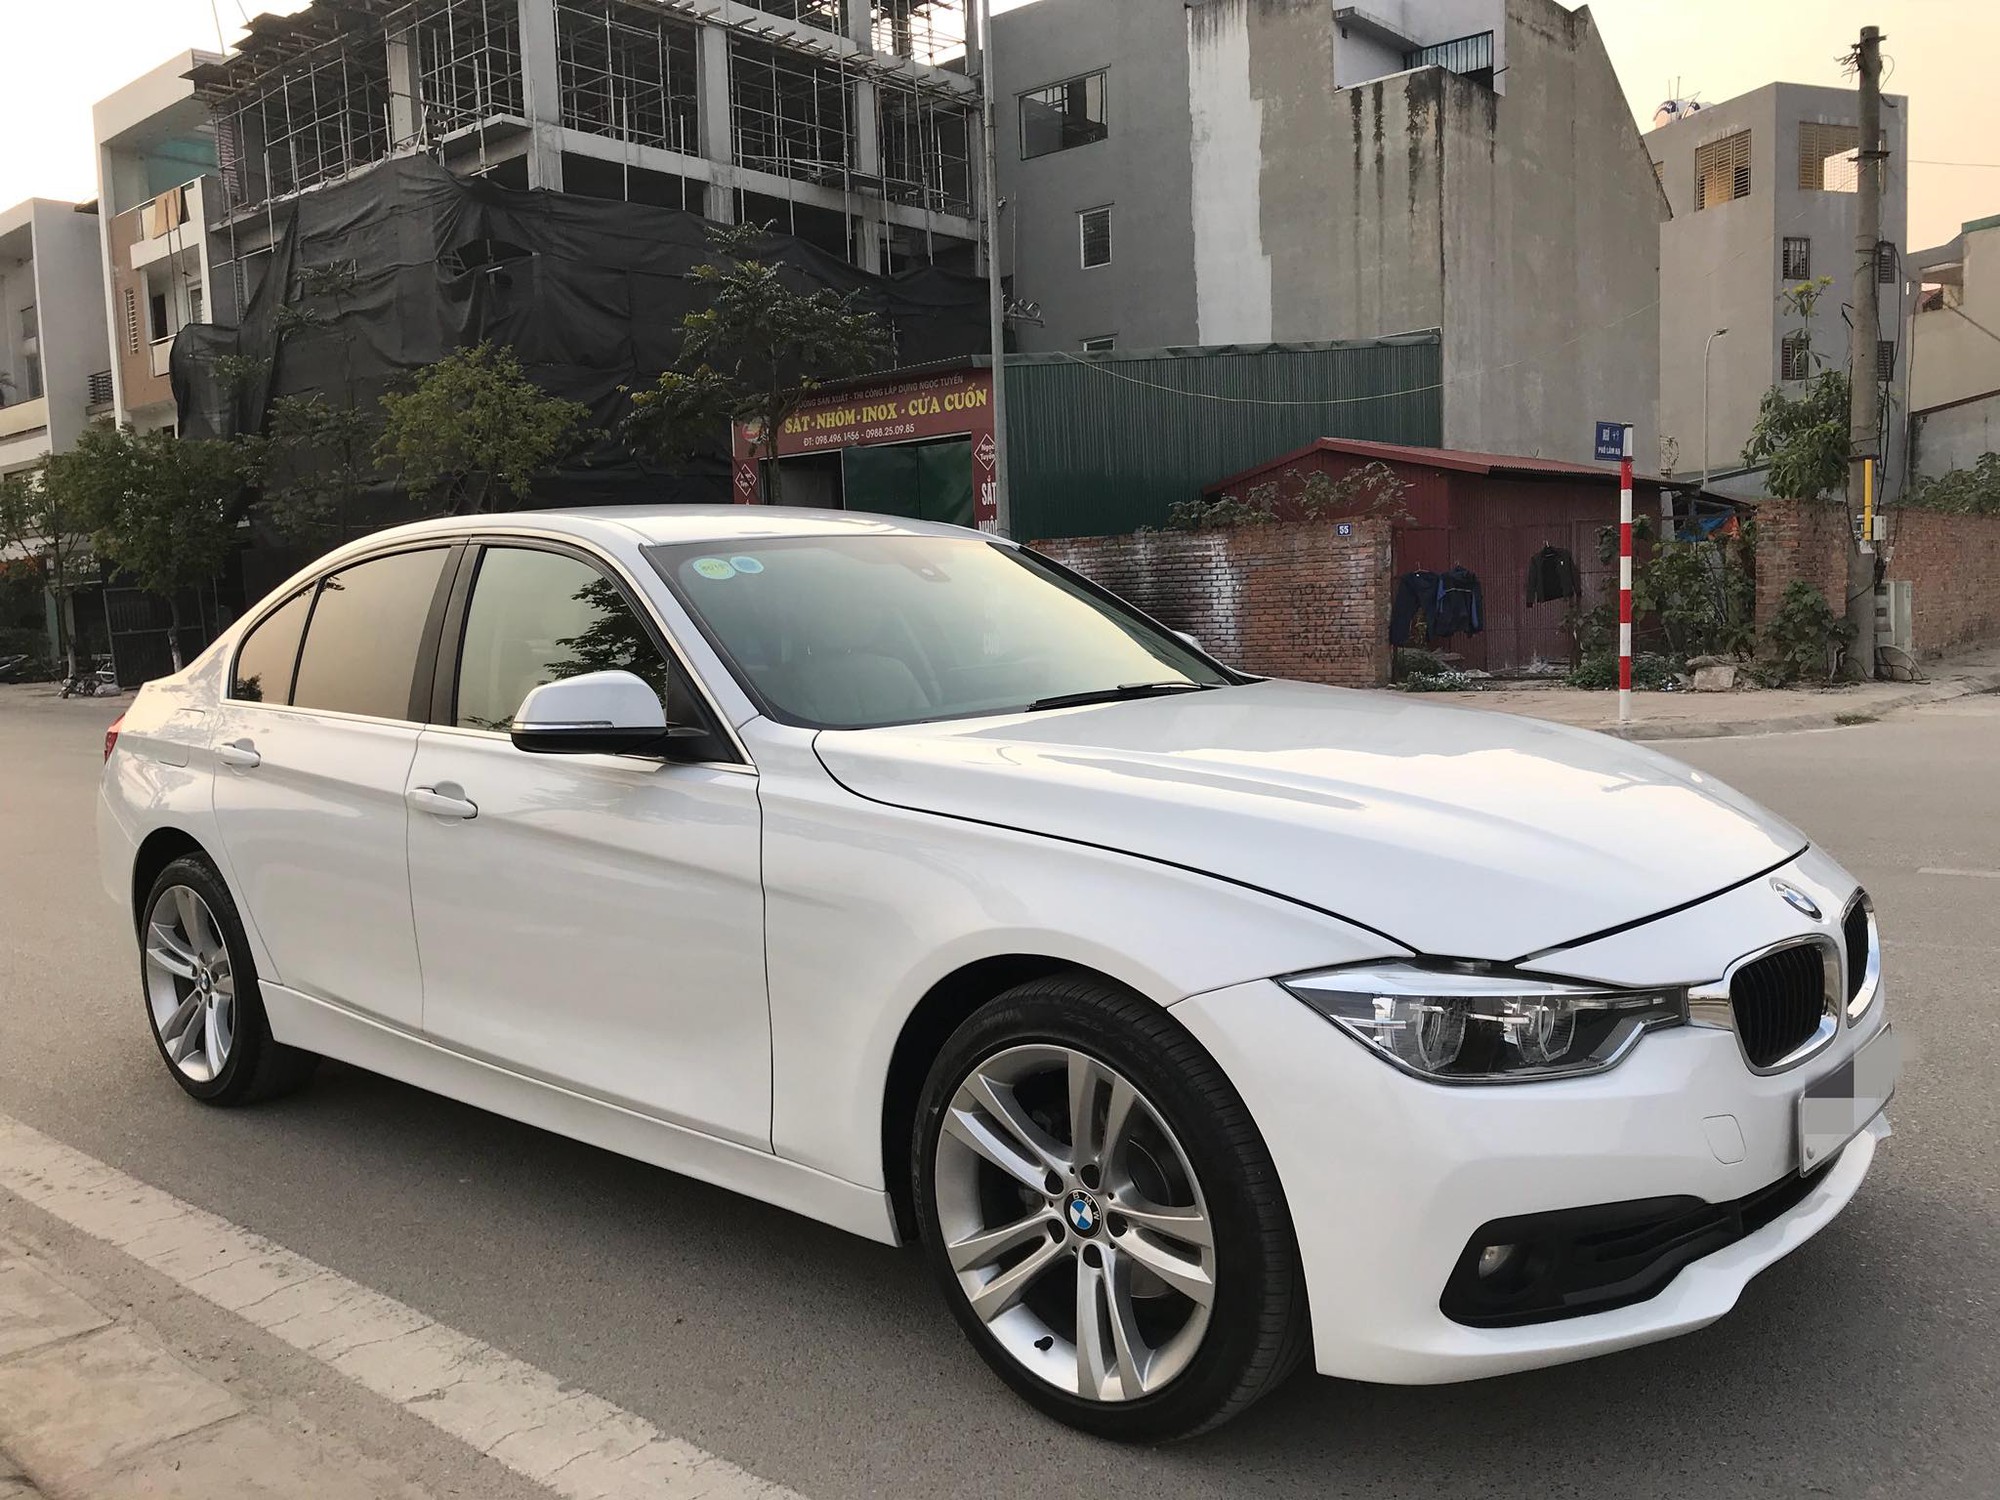 BMW 320i phiên bản 100 năm tại Việt Nam giá 1658 tỷ đồng